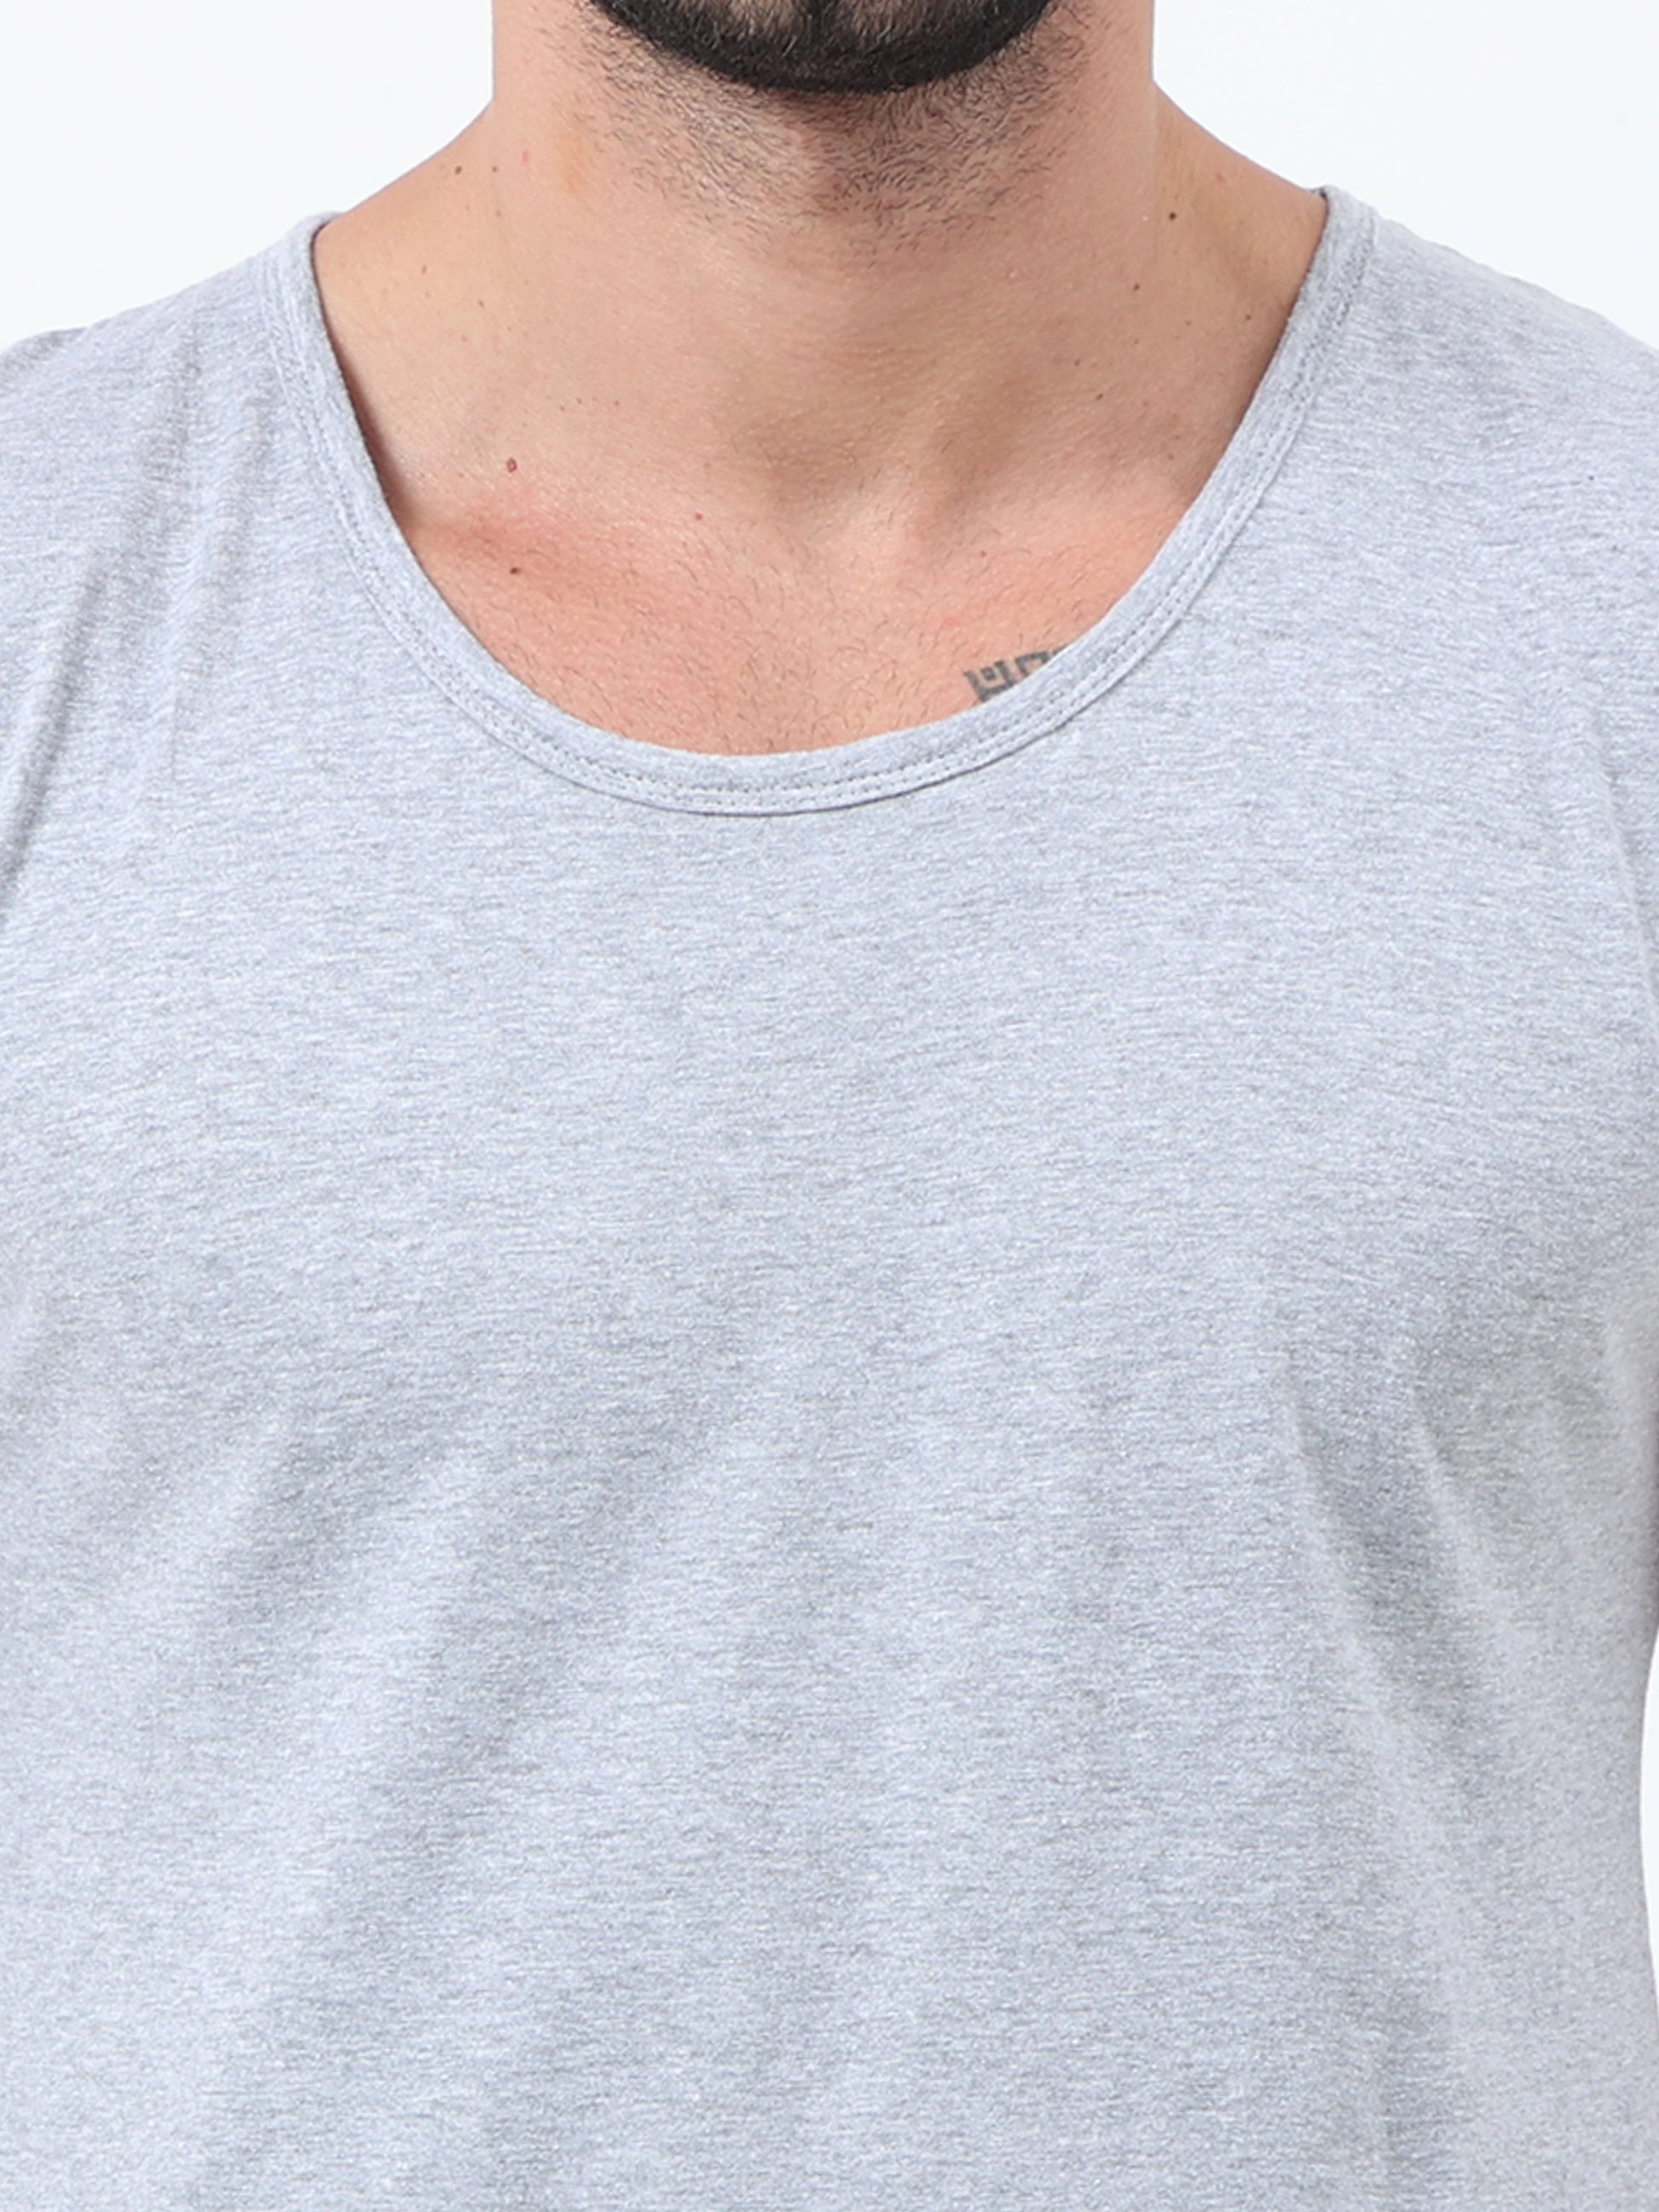 Fleximaa Men's Cotton Color Block Sleeveless T-Shirt - fleximaa-so